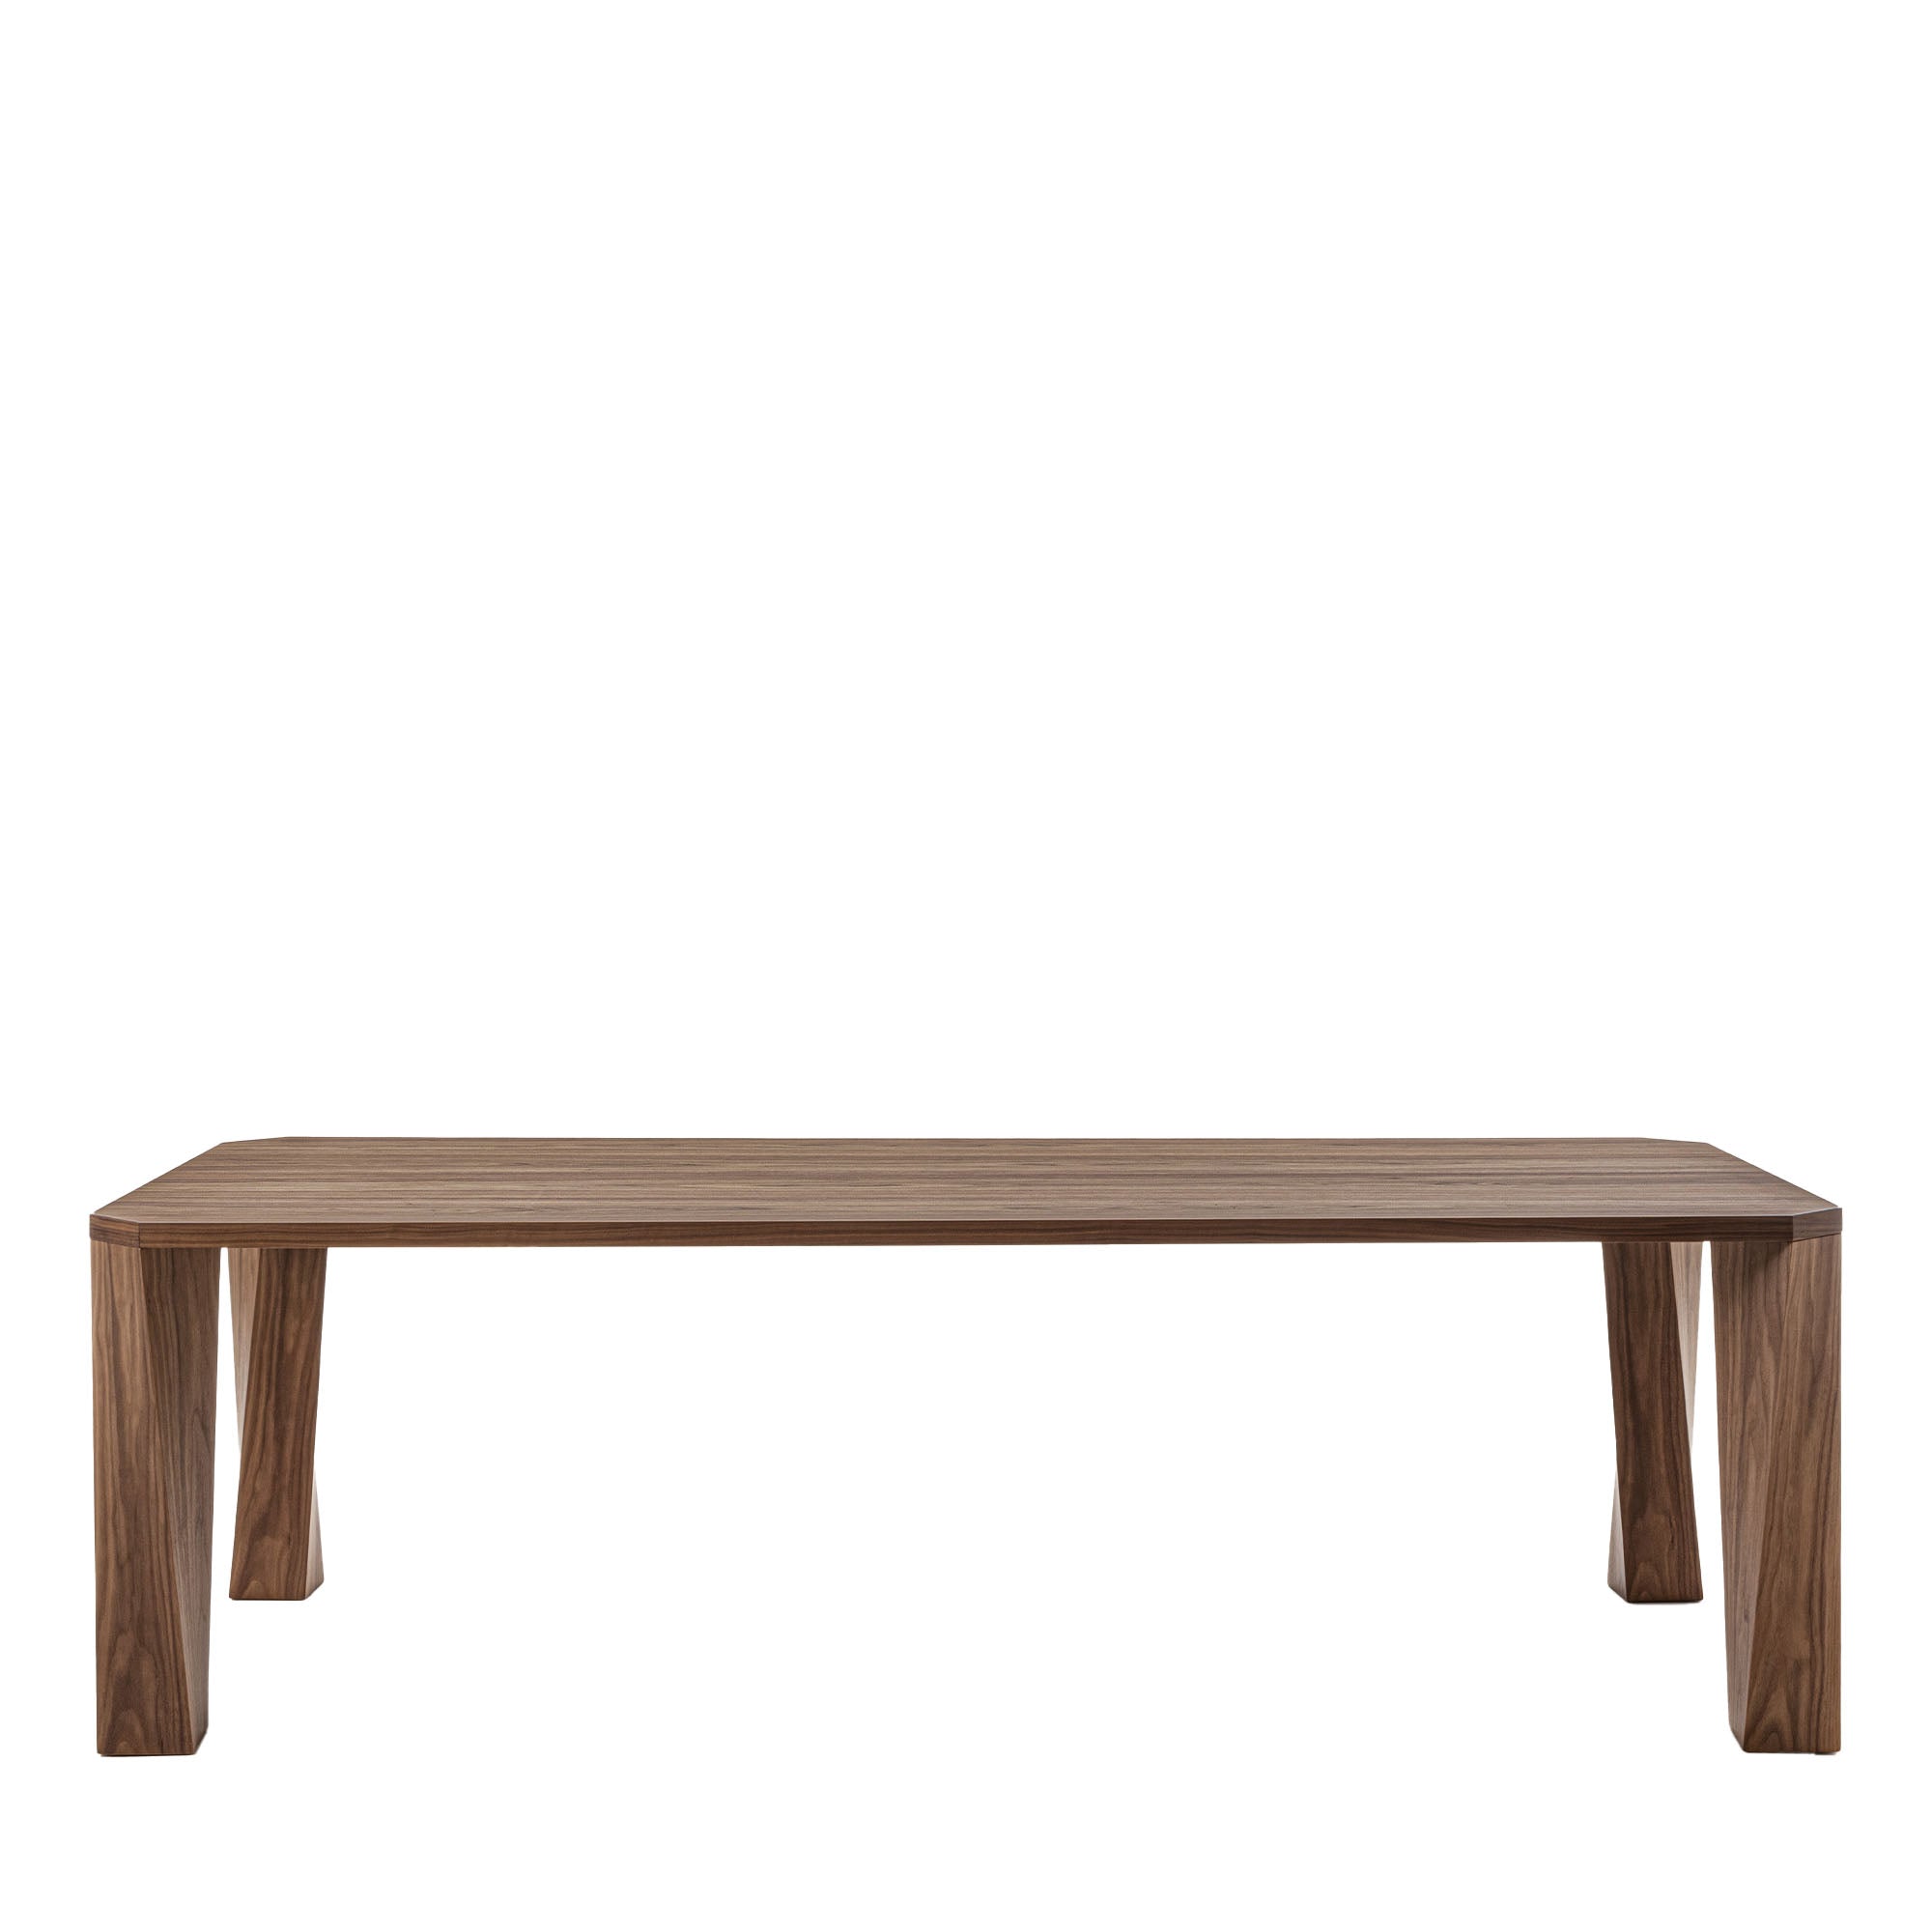 Super Twist Table rectangulaire en bois de noyer Canaletto - Vue principale